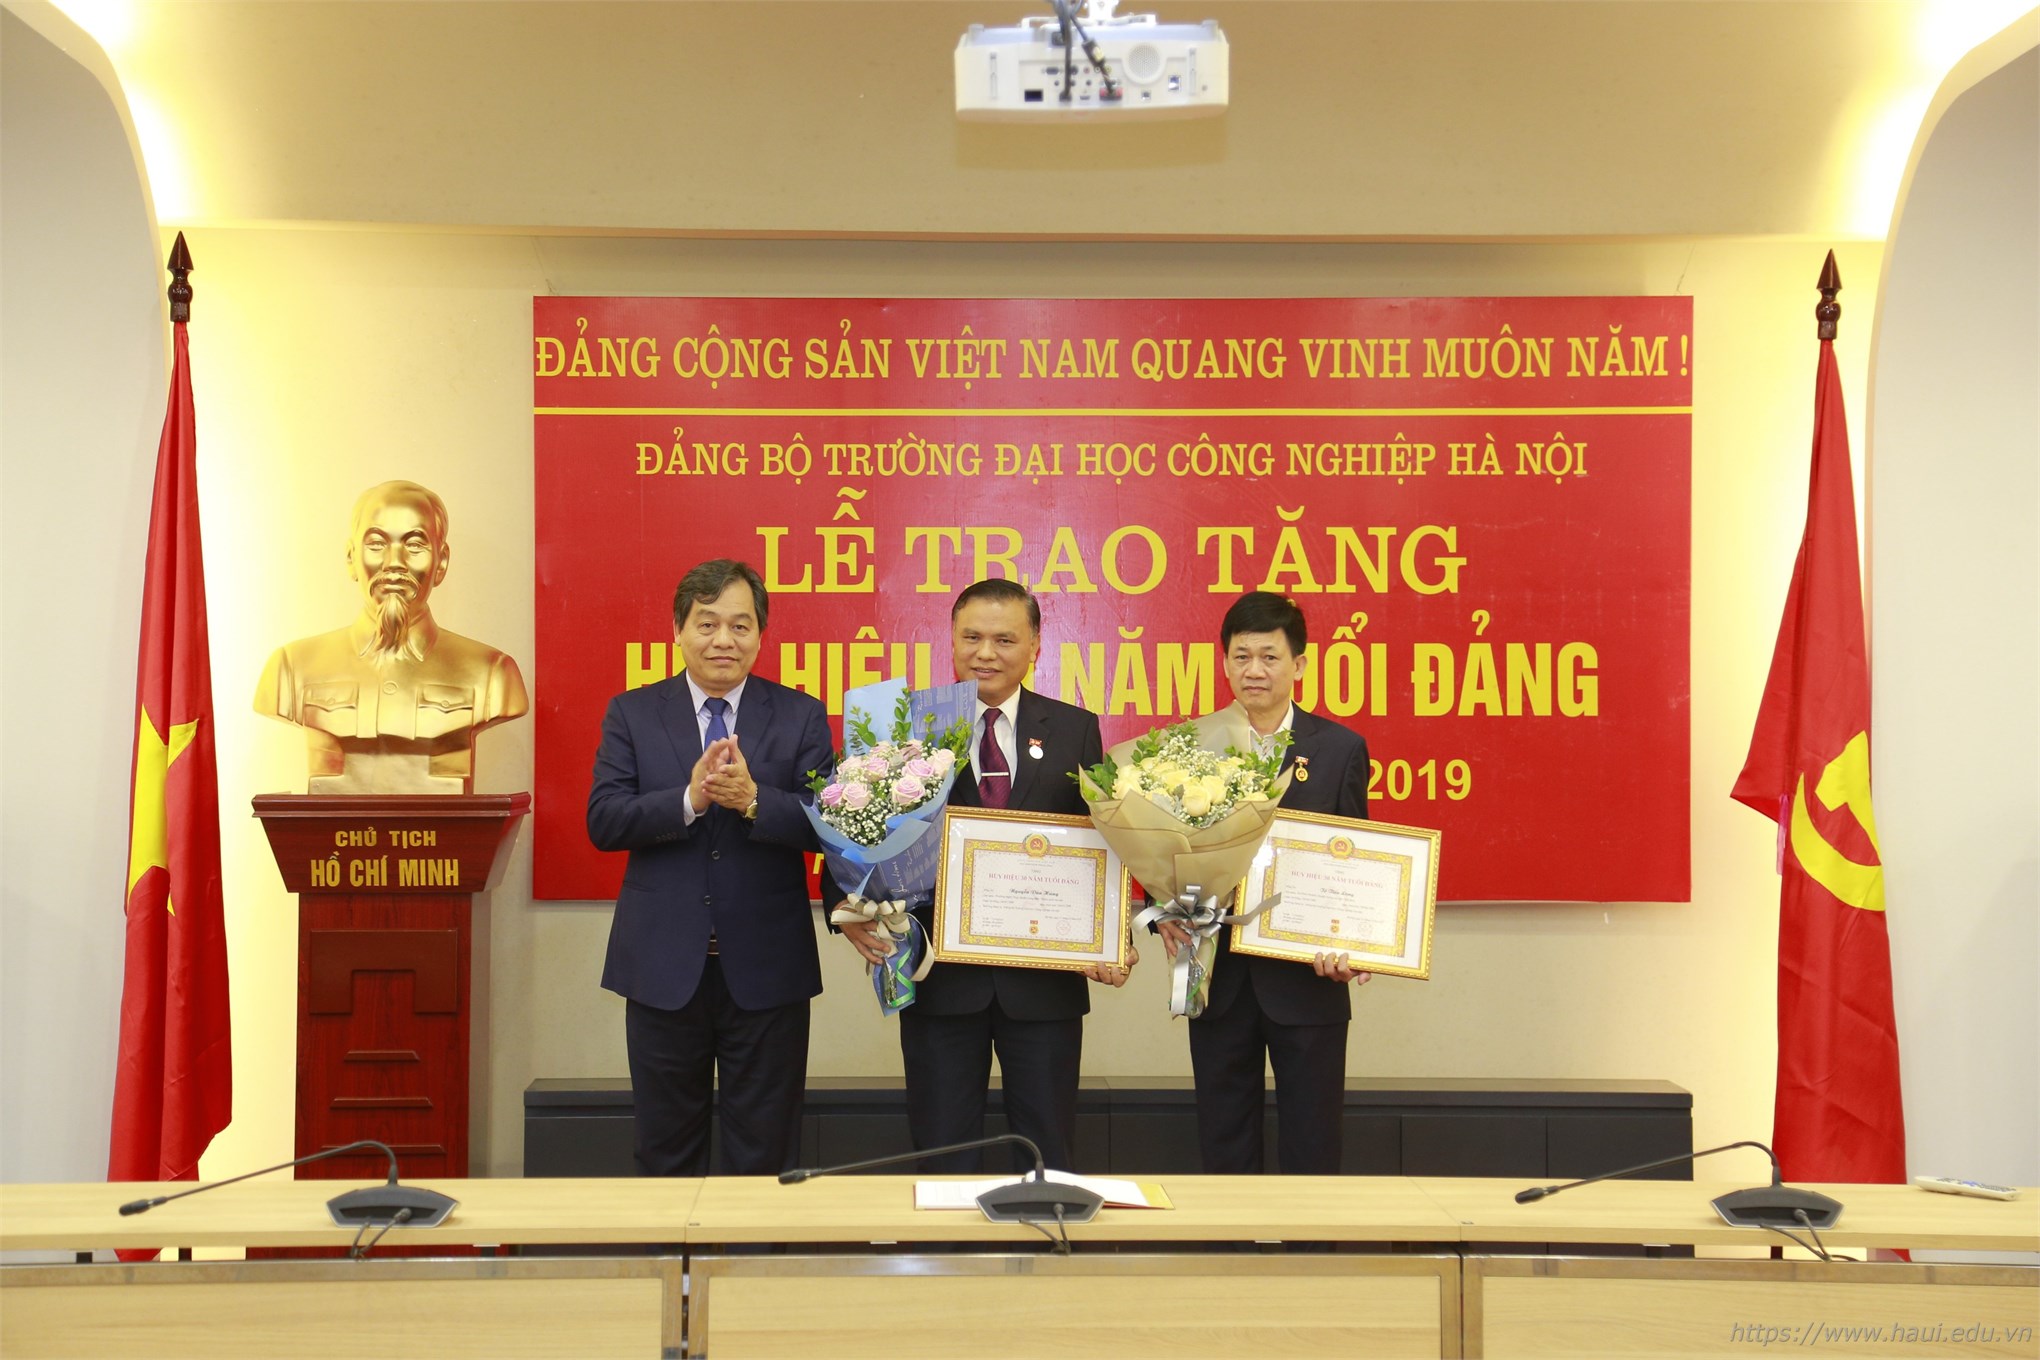 Đồng chí Tô Tiến Long – Người thầy với kinh nghiệm 37 năm tuổi nghề nhận huy hiệu 30 năm tuổi Đảng